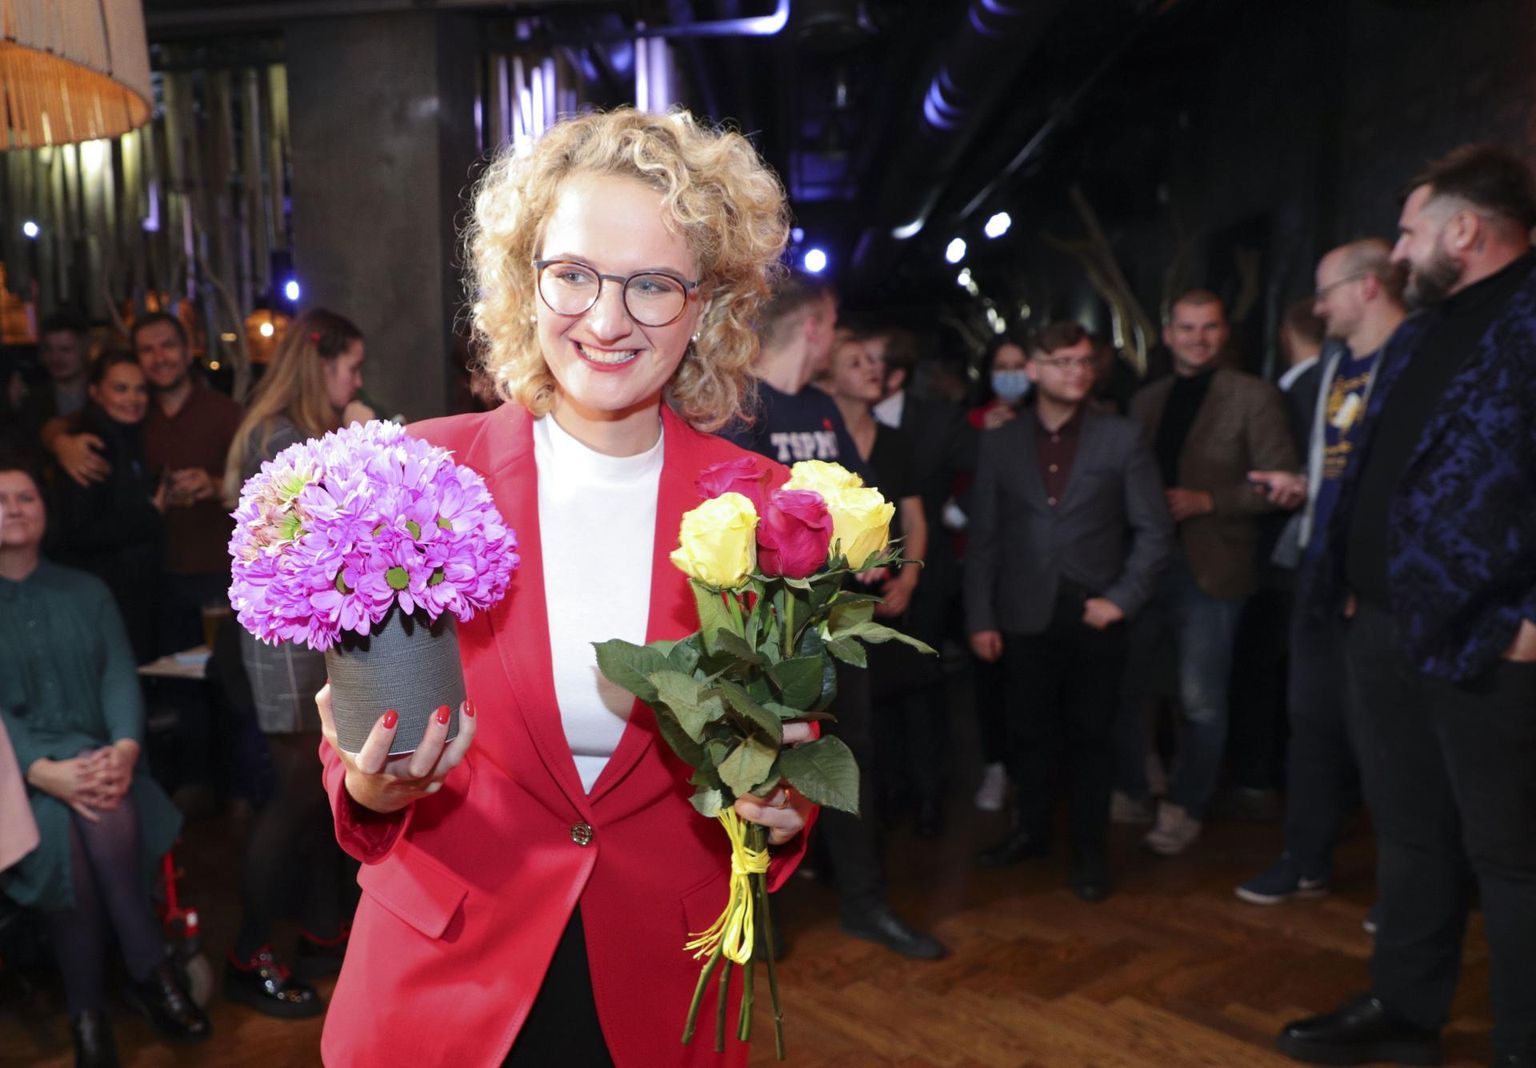 Leedu valimiste esimese vooru suurima üllatuse sepistas Vabaduspartei Aušrinė Armonaitė juhtimisel – erakonnale ennustati valimiskünnisele alla jäämist või selle nappi ületamist, kuid lõpuks said nad üheksa protsenti häältest. 